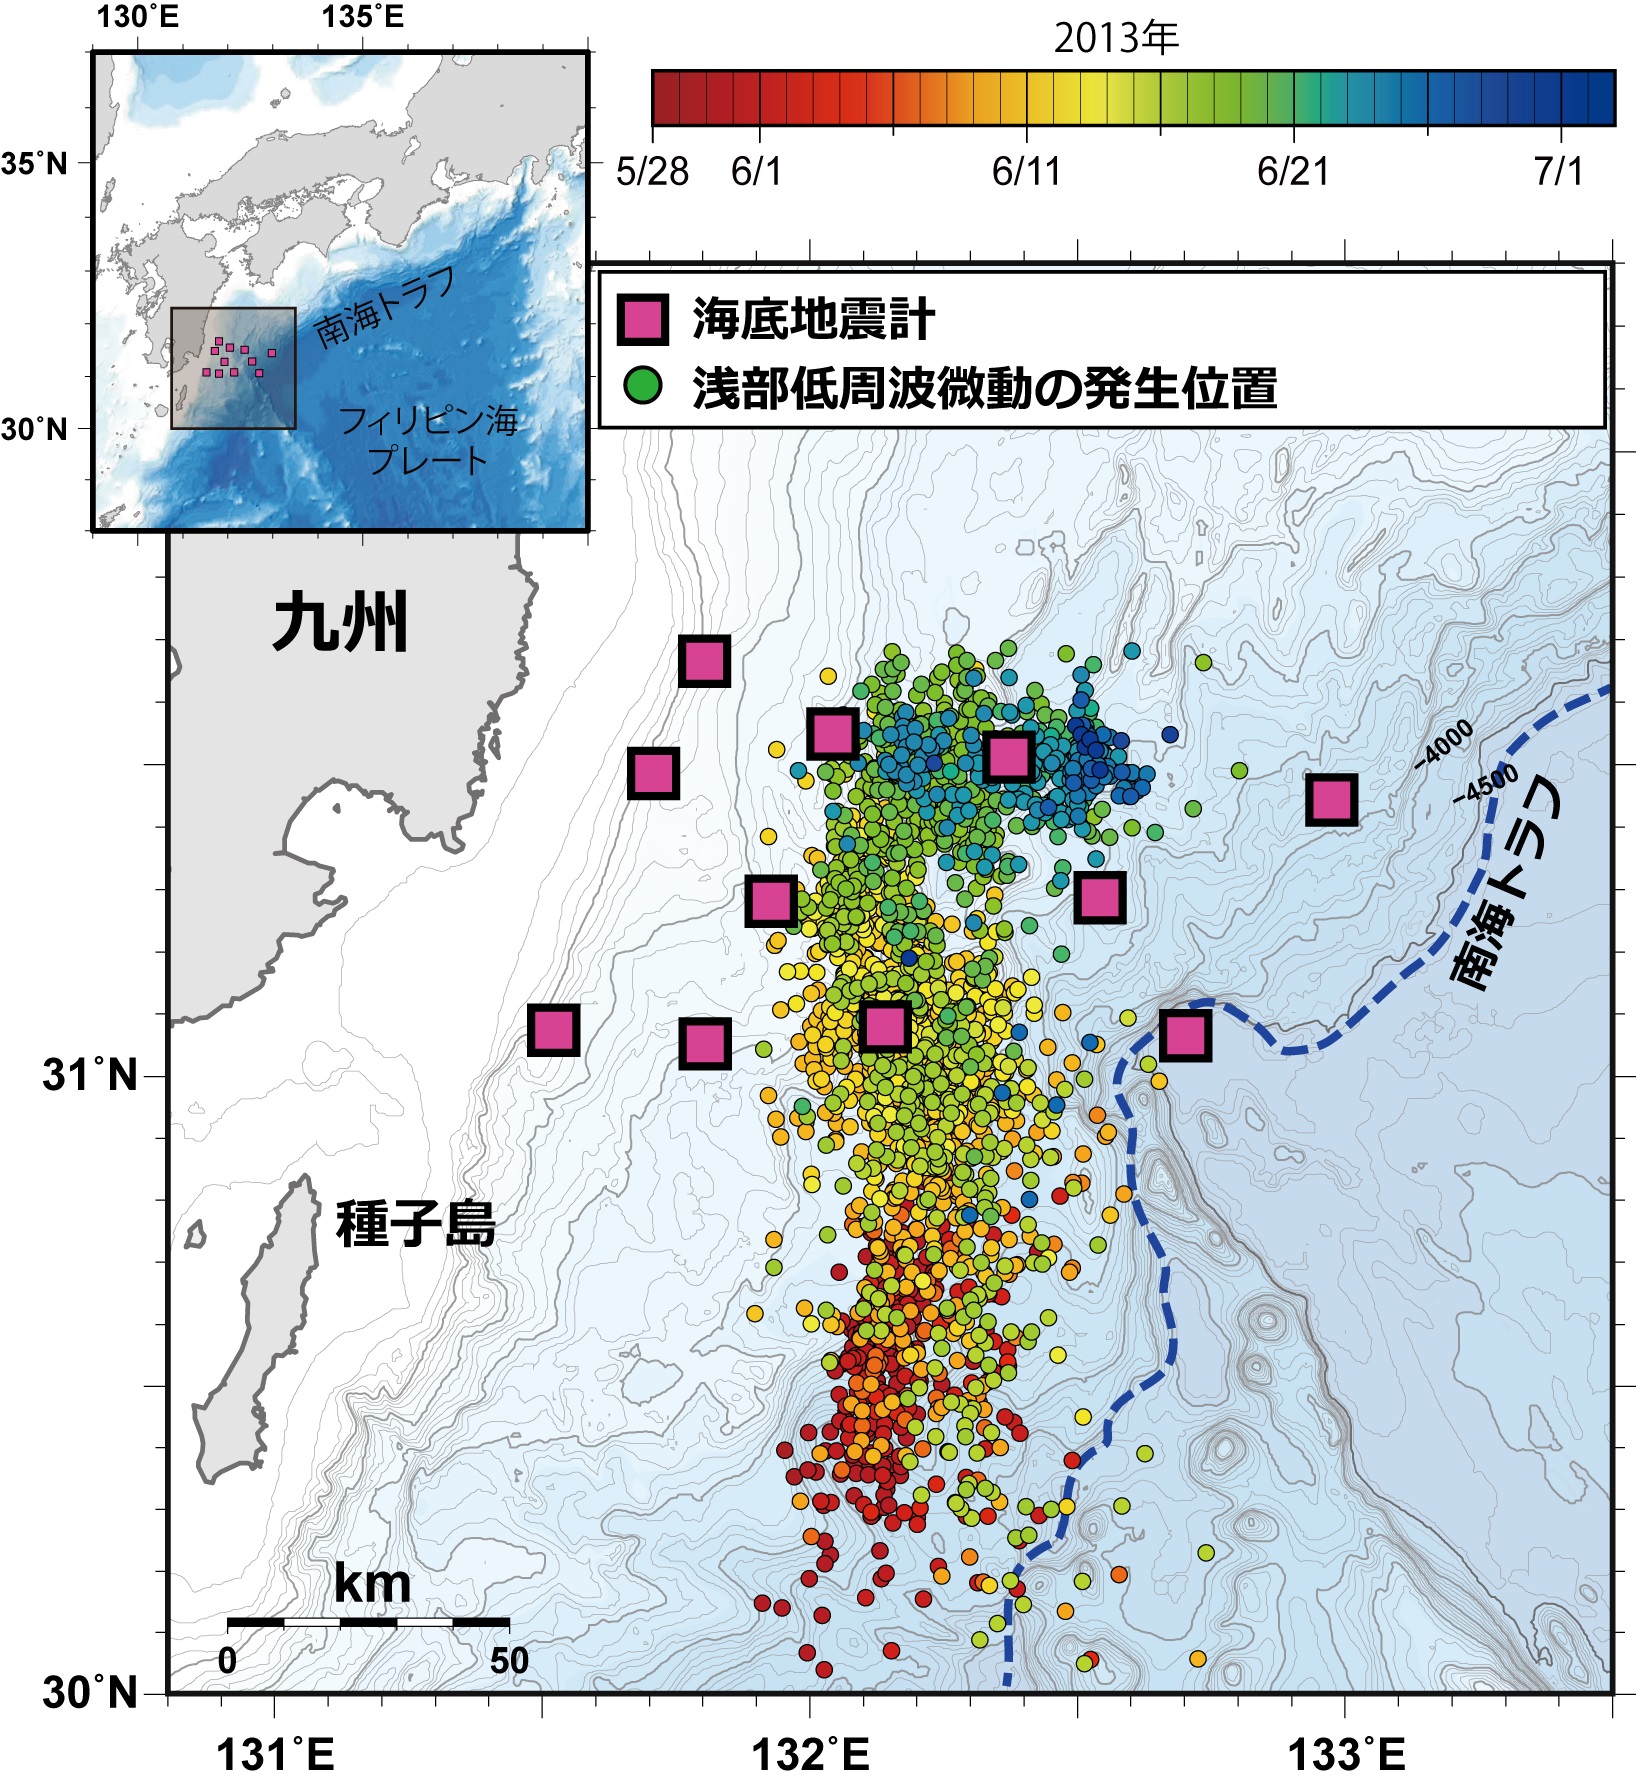 © 2015 Yusuke Yamashita.黄色の四角は、海底地震計を設置した場所を示している。丸印は、浅部低周波微動の発生場所を示し、各丸印の色は発生日時を示している。